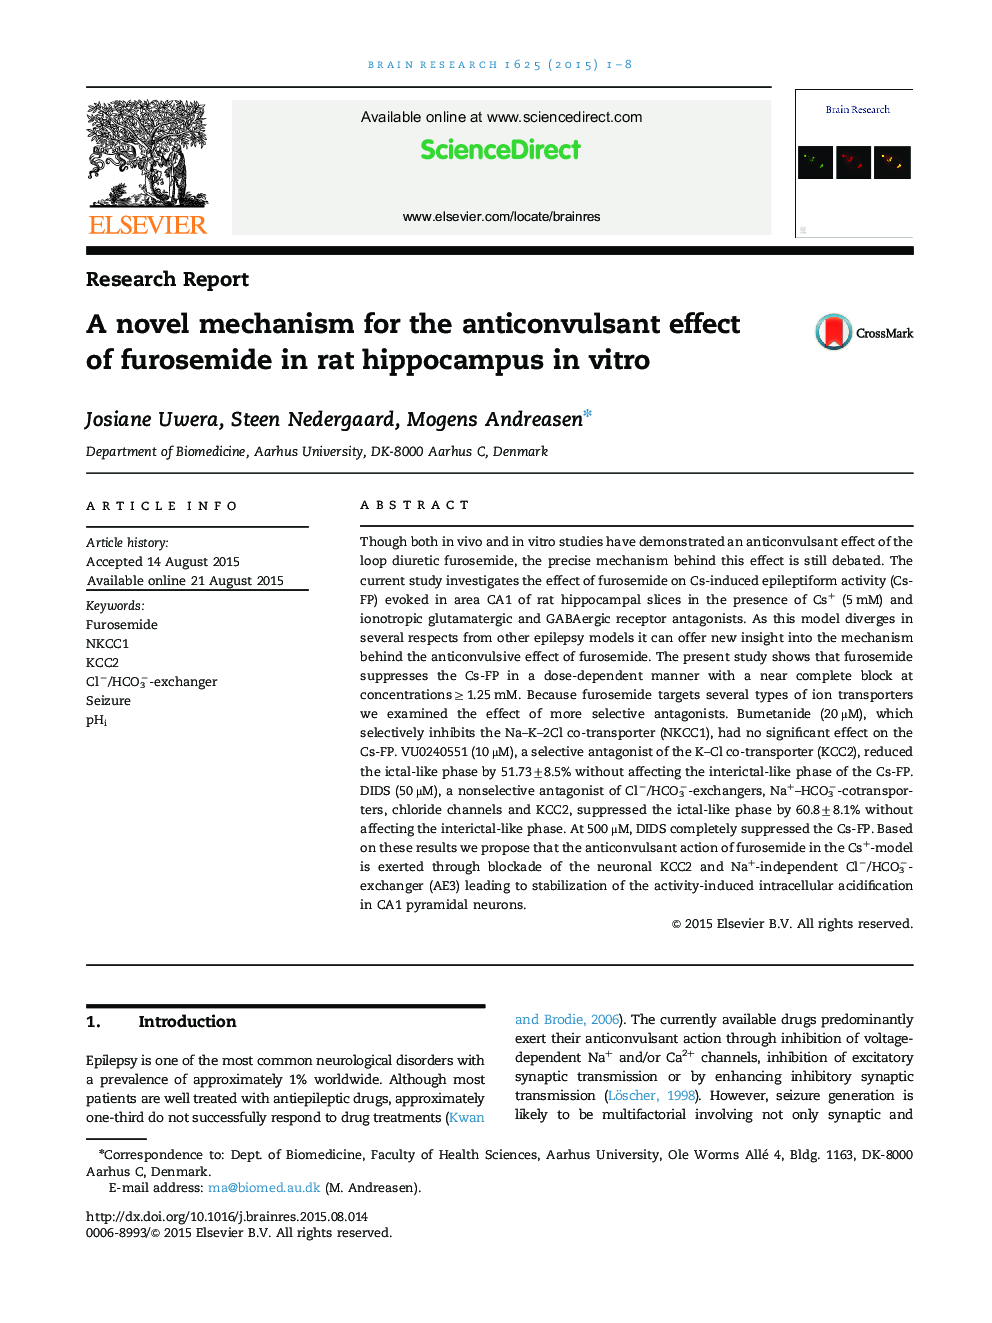 گزارش تحقیق: مکانیسم رمان برای اثر ضدتشنج فوروزماید در موش هیپوکامپ در آزمایشگاهی 